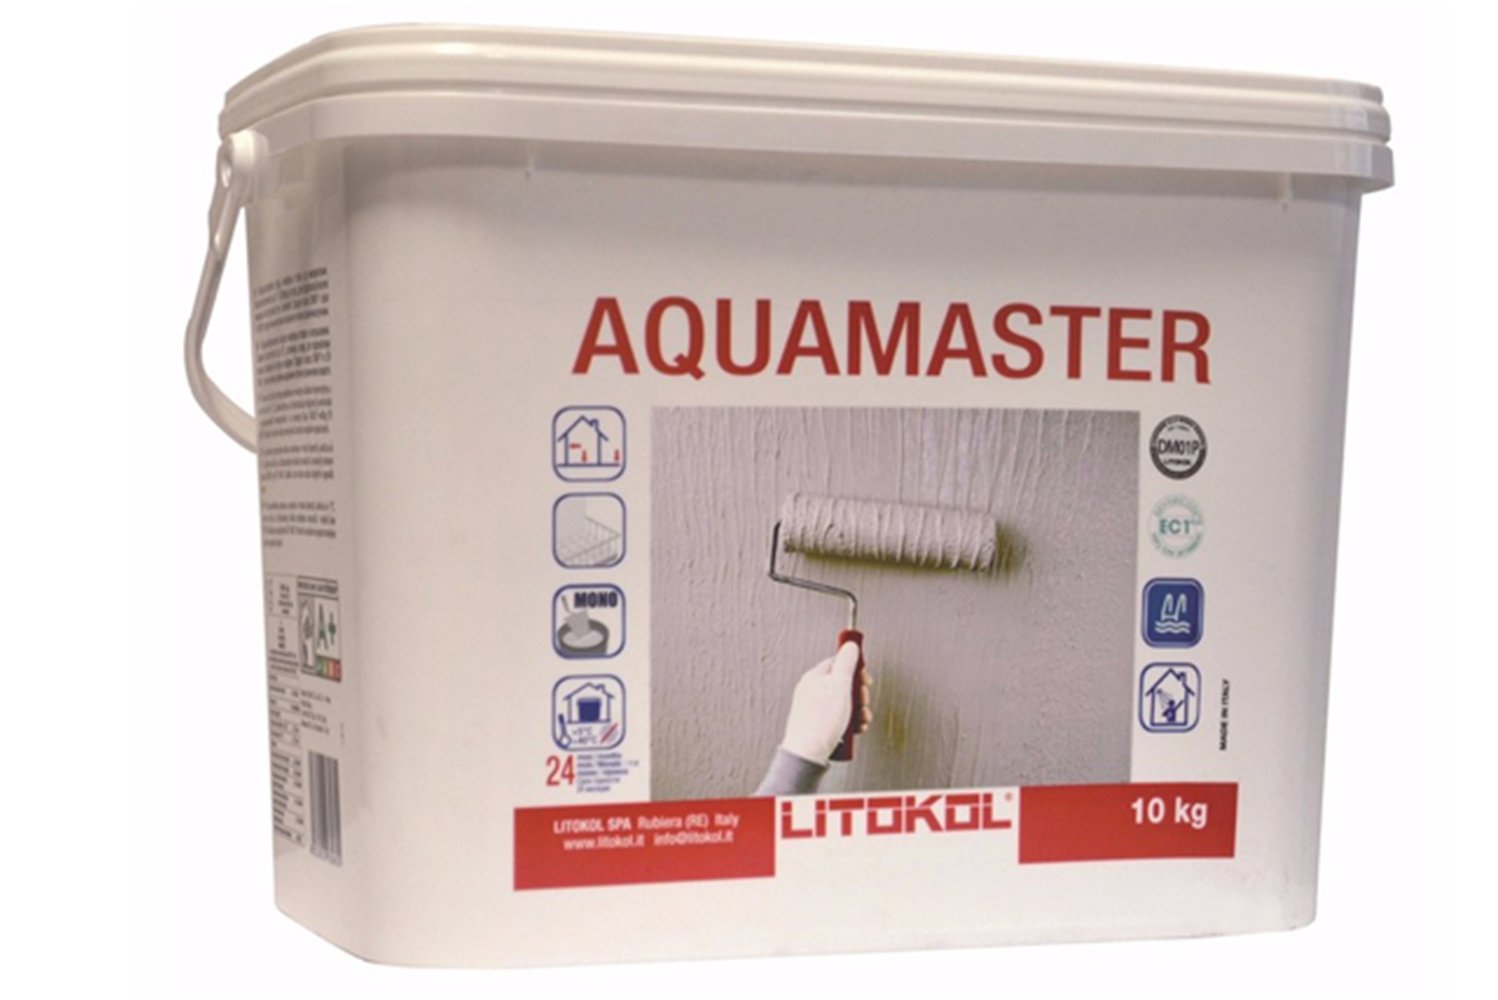 Гидроизоляция литокол. Litokol Aquamaster 20 кг. Litokol Aquamaster 10 кг. Гидрофлекс Литокол 10кг. Гидроизоляция Литокол Аквамастер.